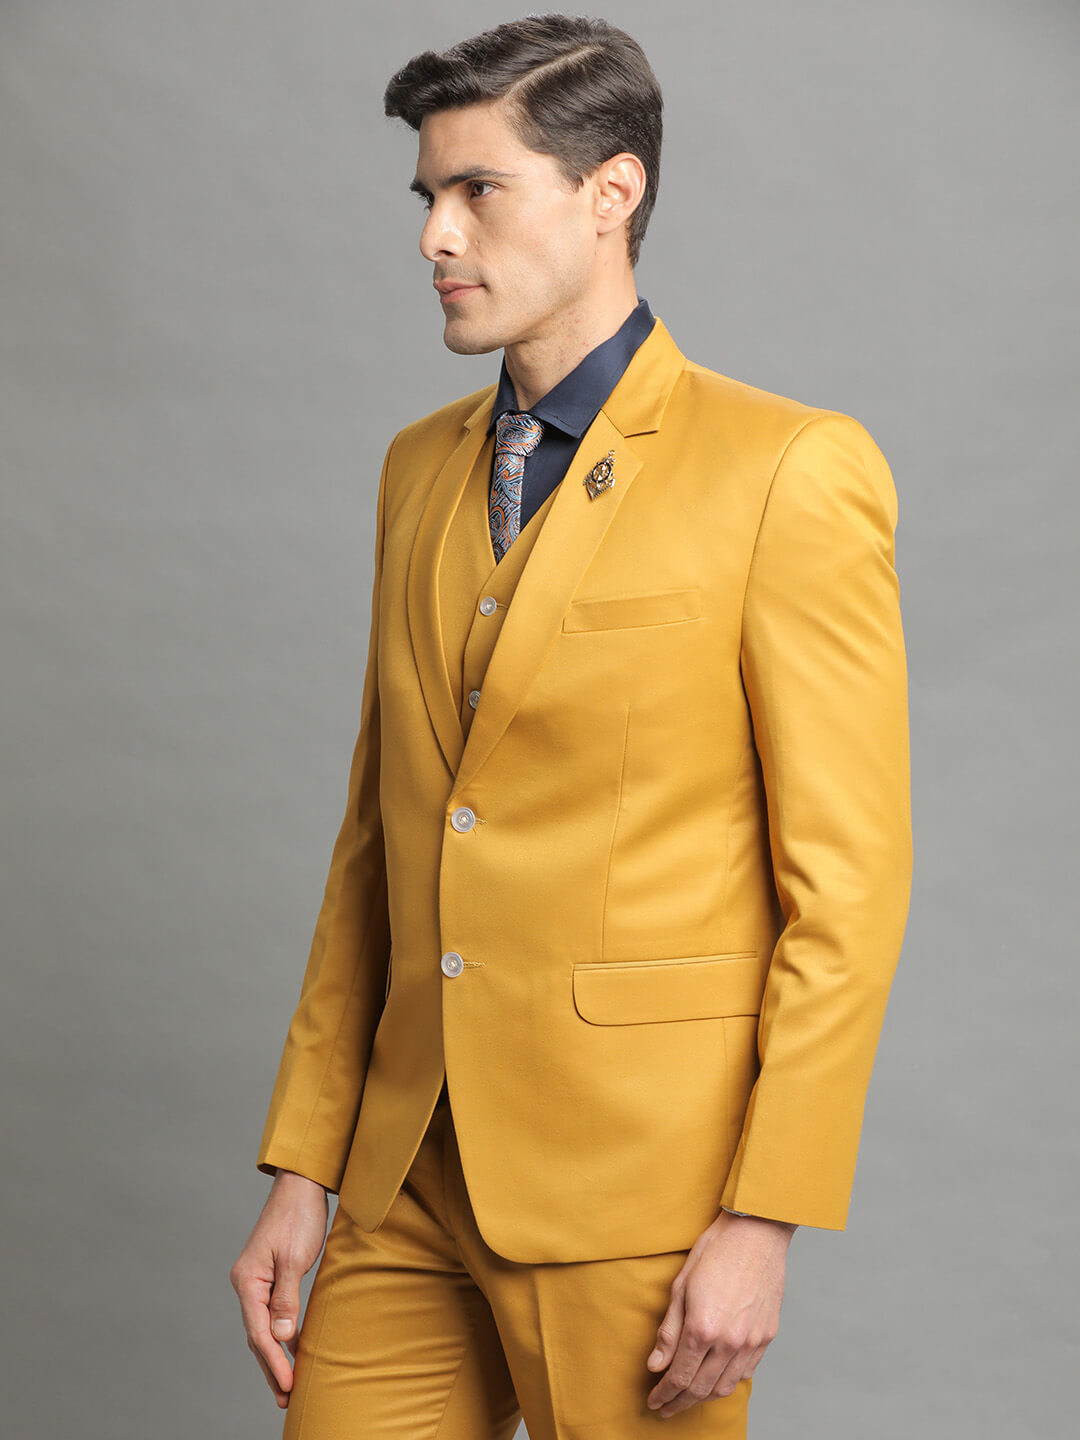 golden-yellow-3-piece-suit